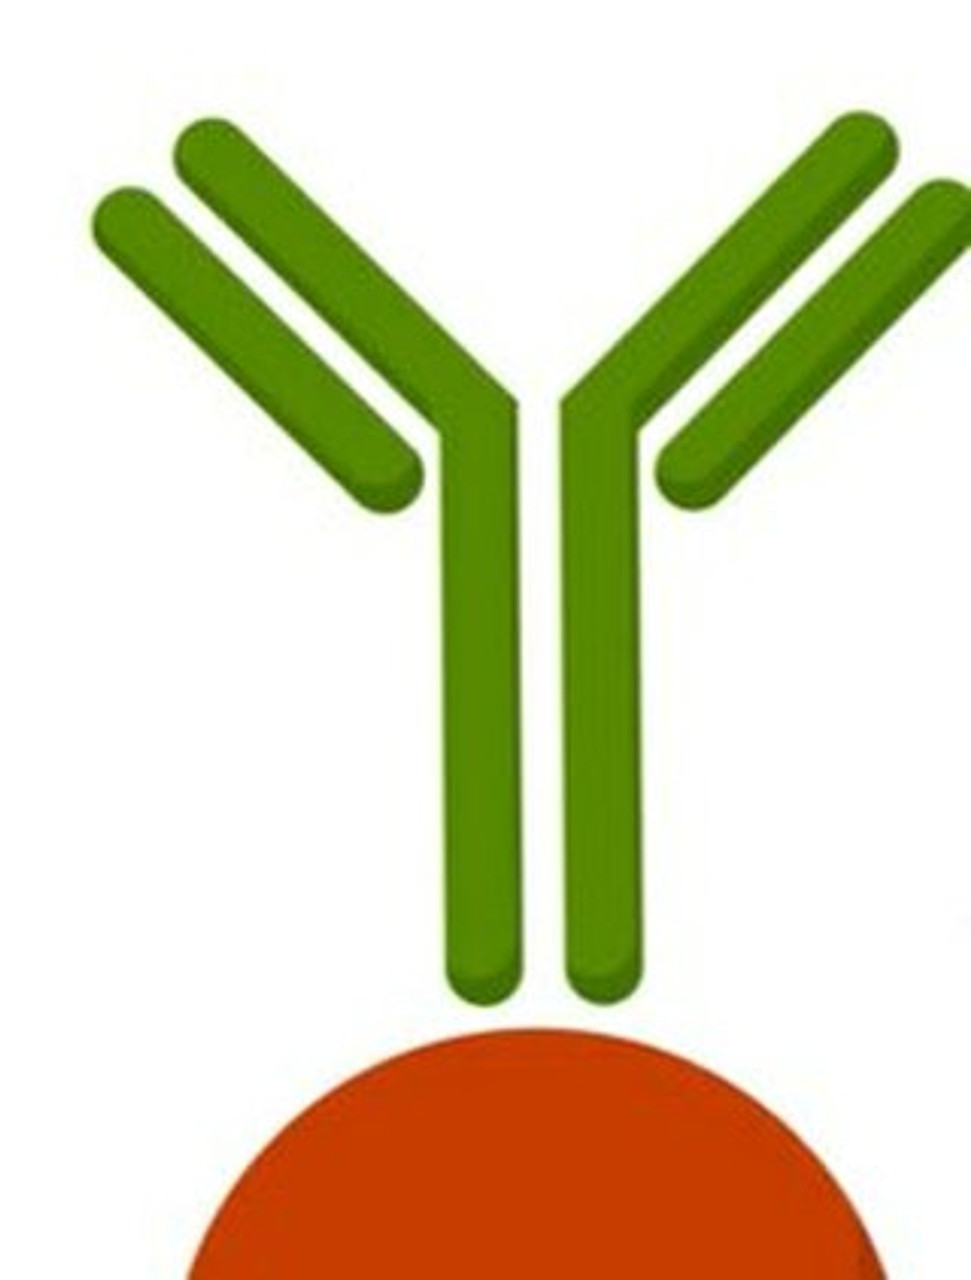 Anti-Calpain 3 antibody